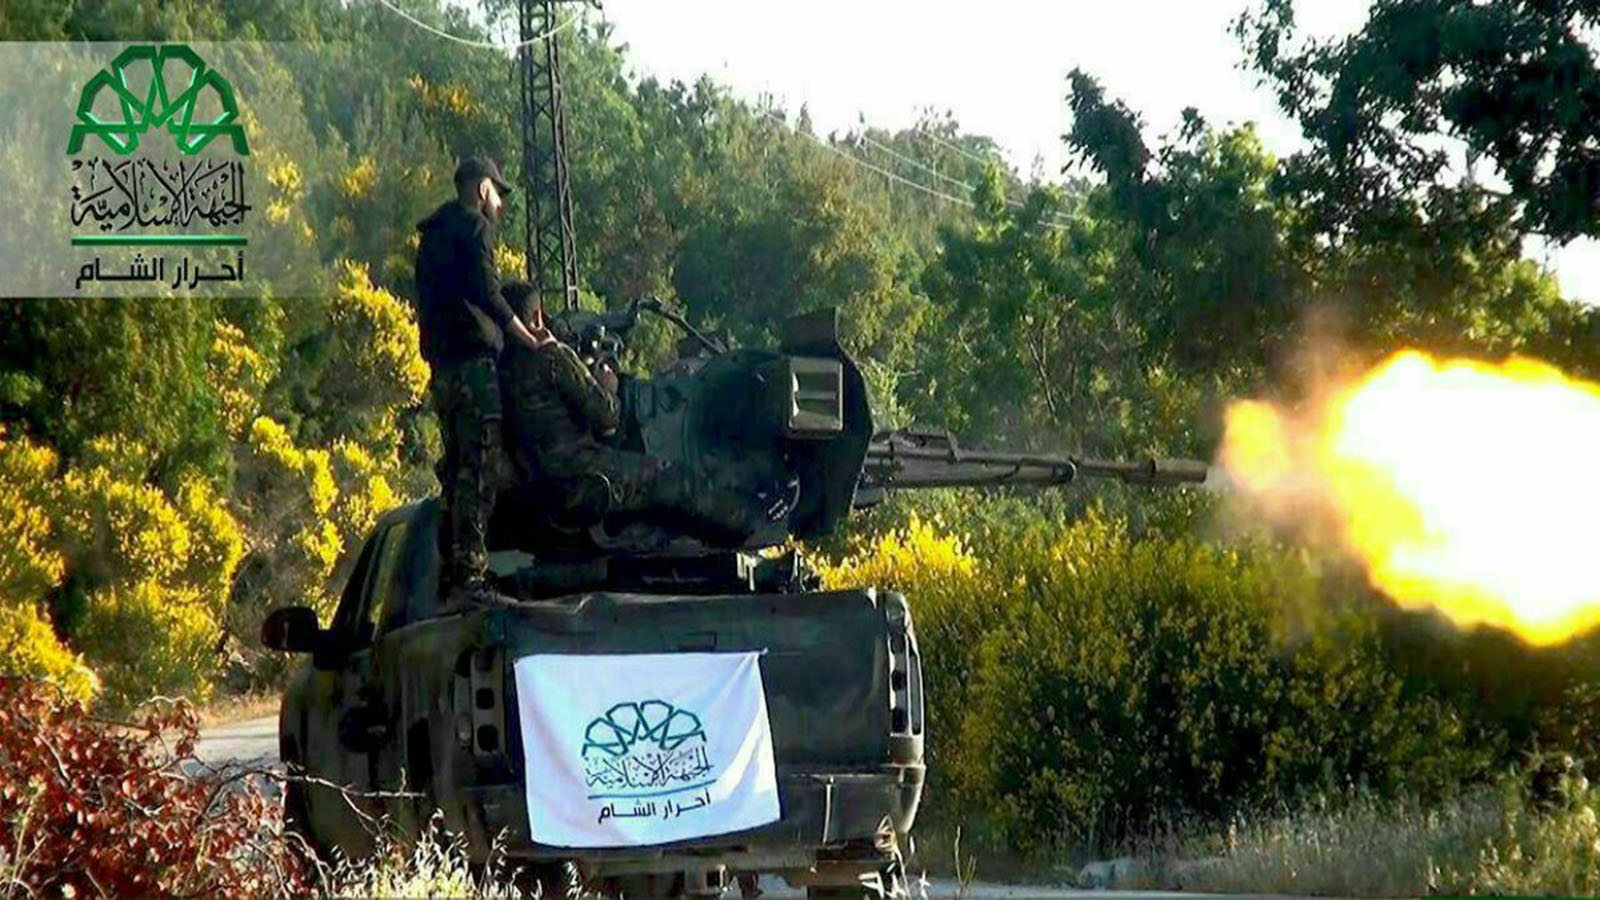 "الزنكي" و"فيلق الشام" ينتظران نتائج معركة ادلب..للتوسع في حلب